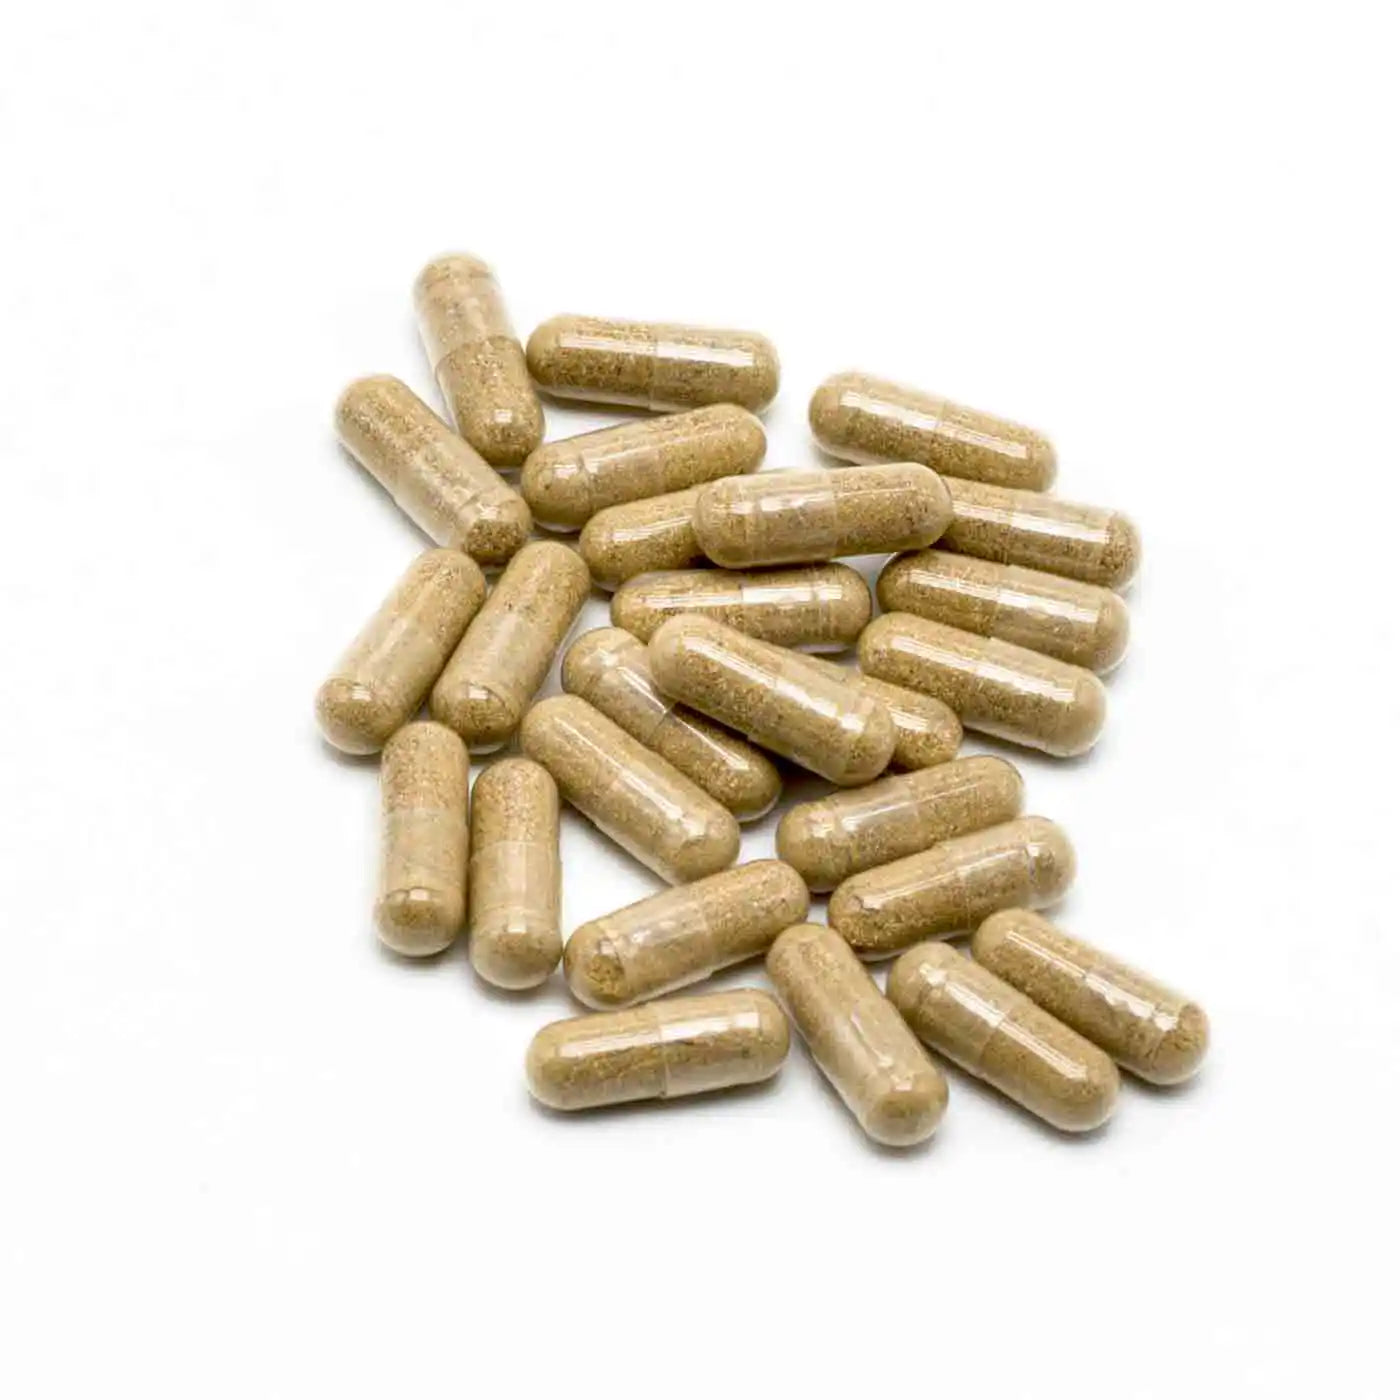 Ashwagandha Bio KSM-66™, 5% withanólidos | 60 cápsulas